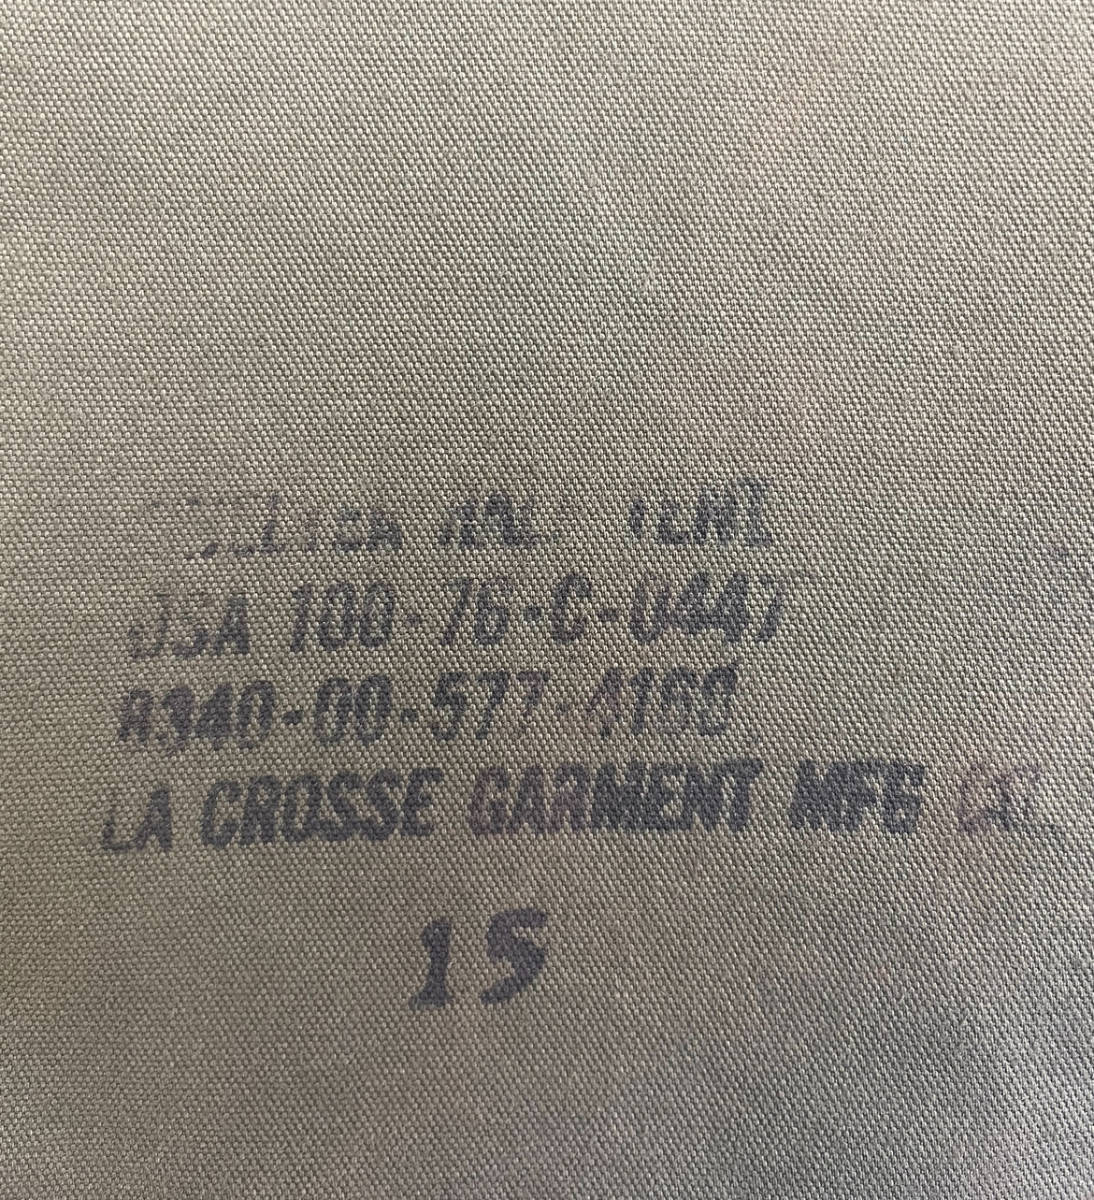 1976年ファスナー3本縫製済み(中央に縫製)米軍パップテント カスタム グッドコンディション！【田園びよりキャンプ場】_画像5